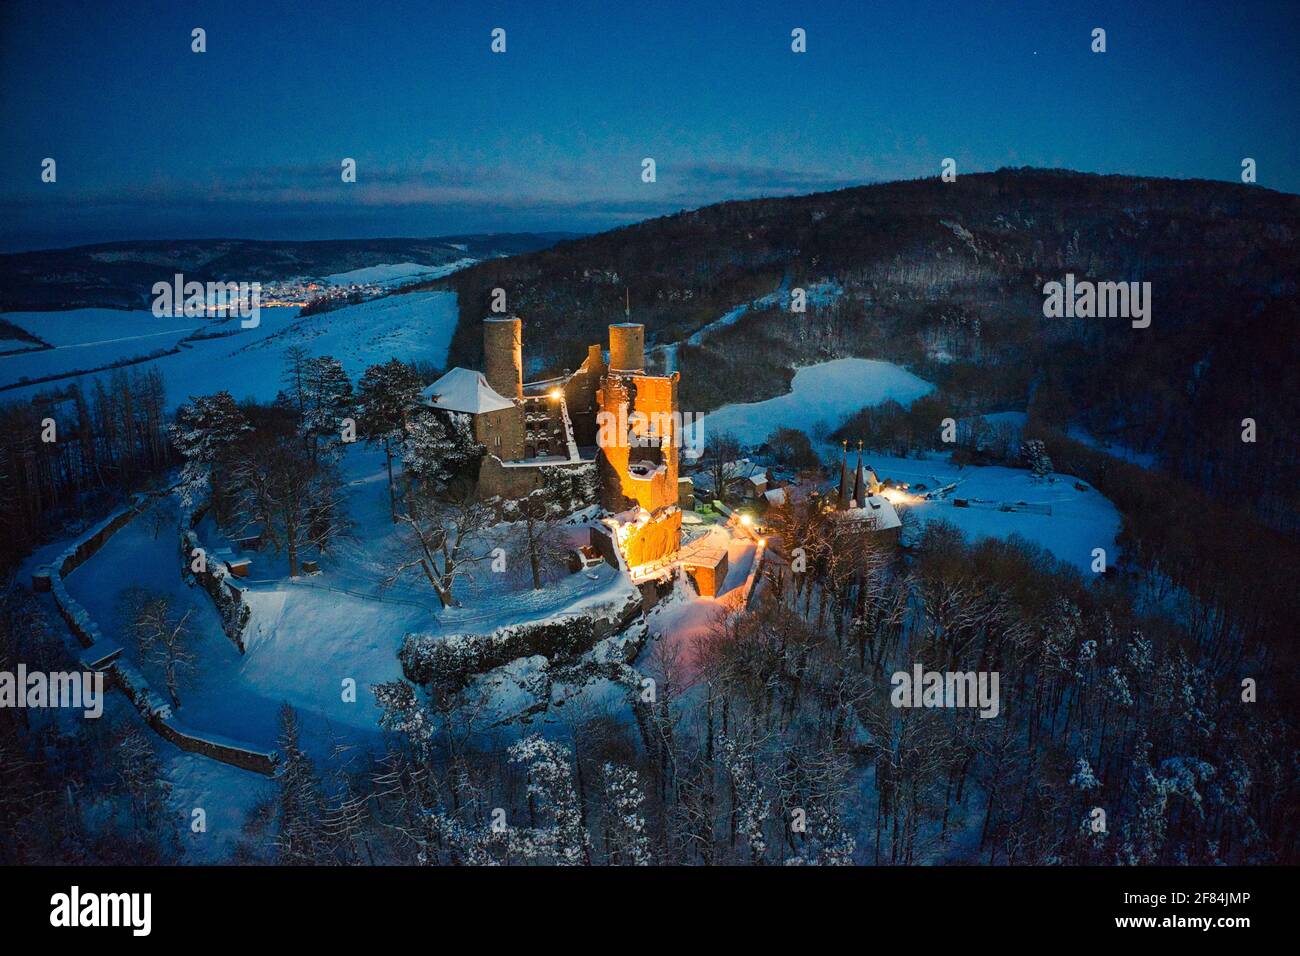 Luftaufnahme von Burg Hanstein und dem Dorf Rimbach im Winter Abend mit Béléuchtung Banque D'Images